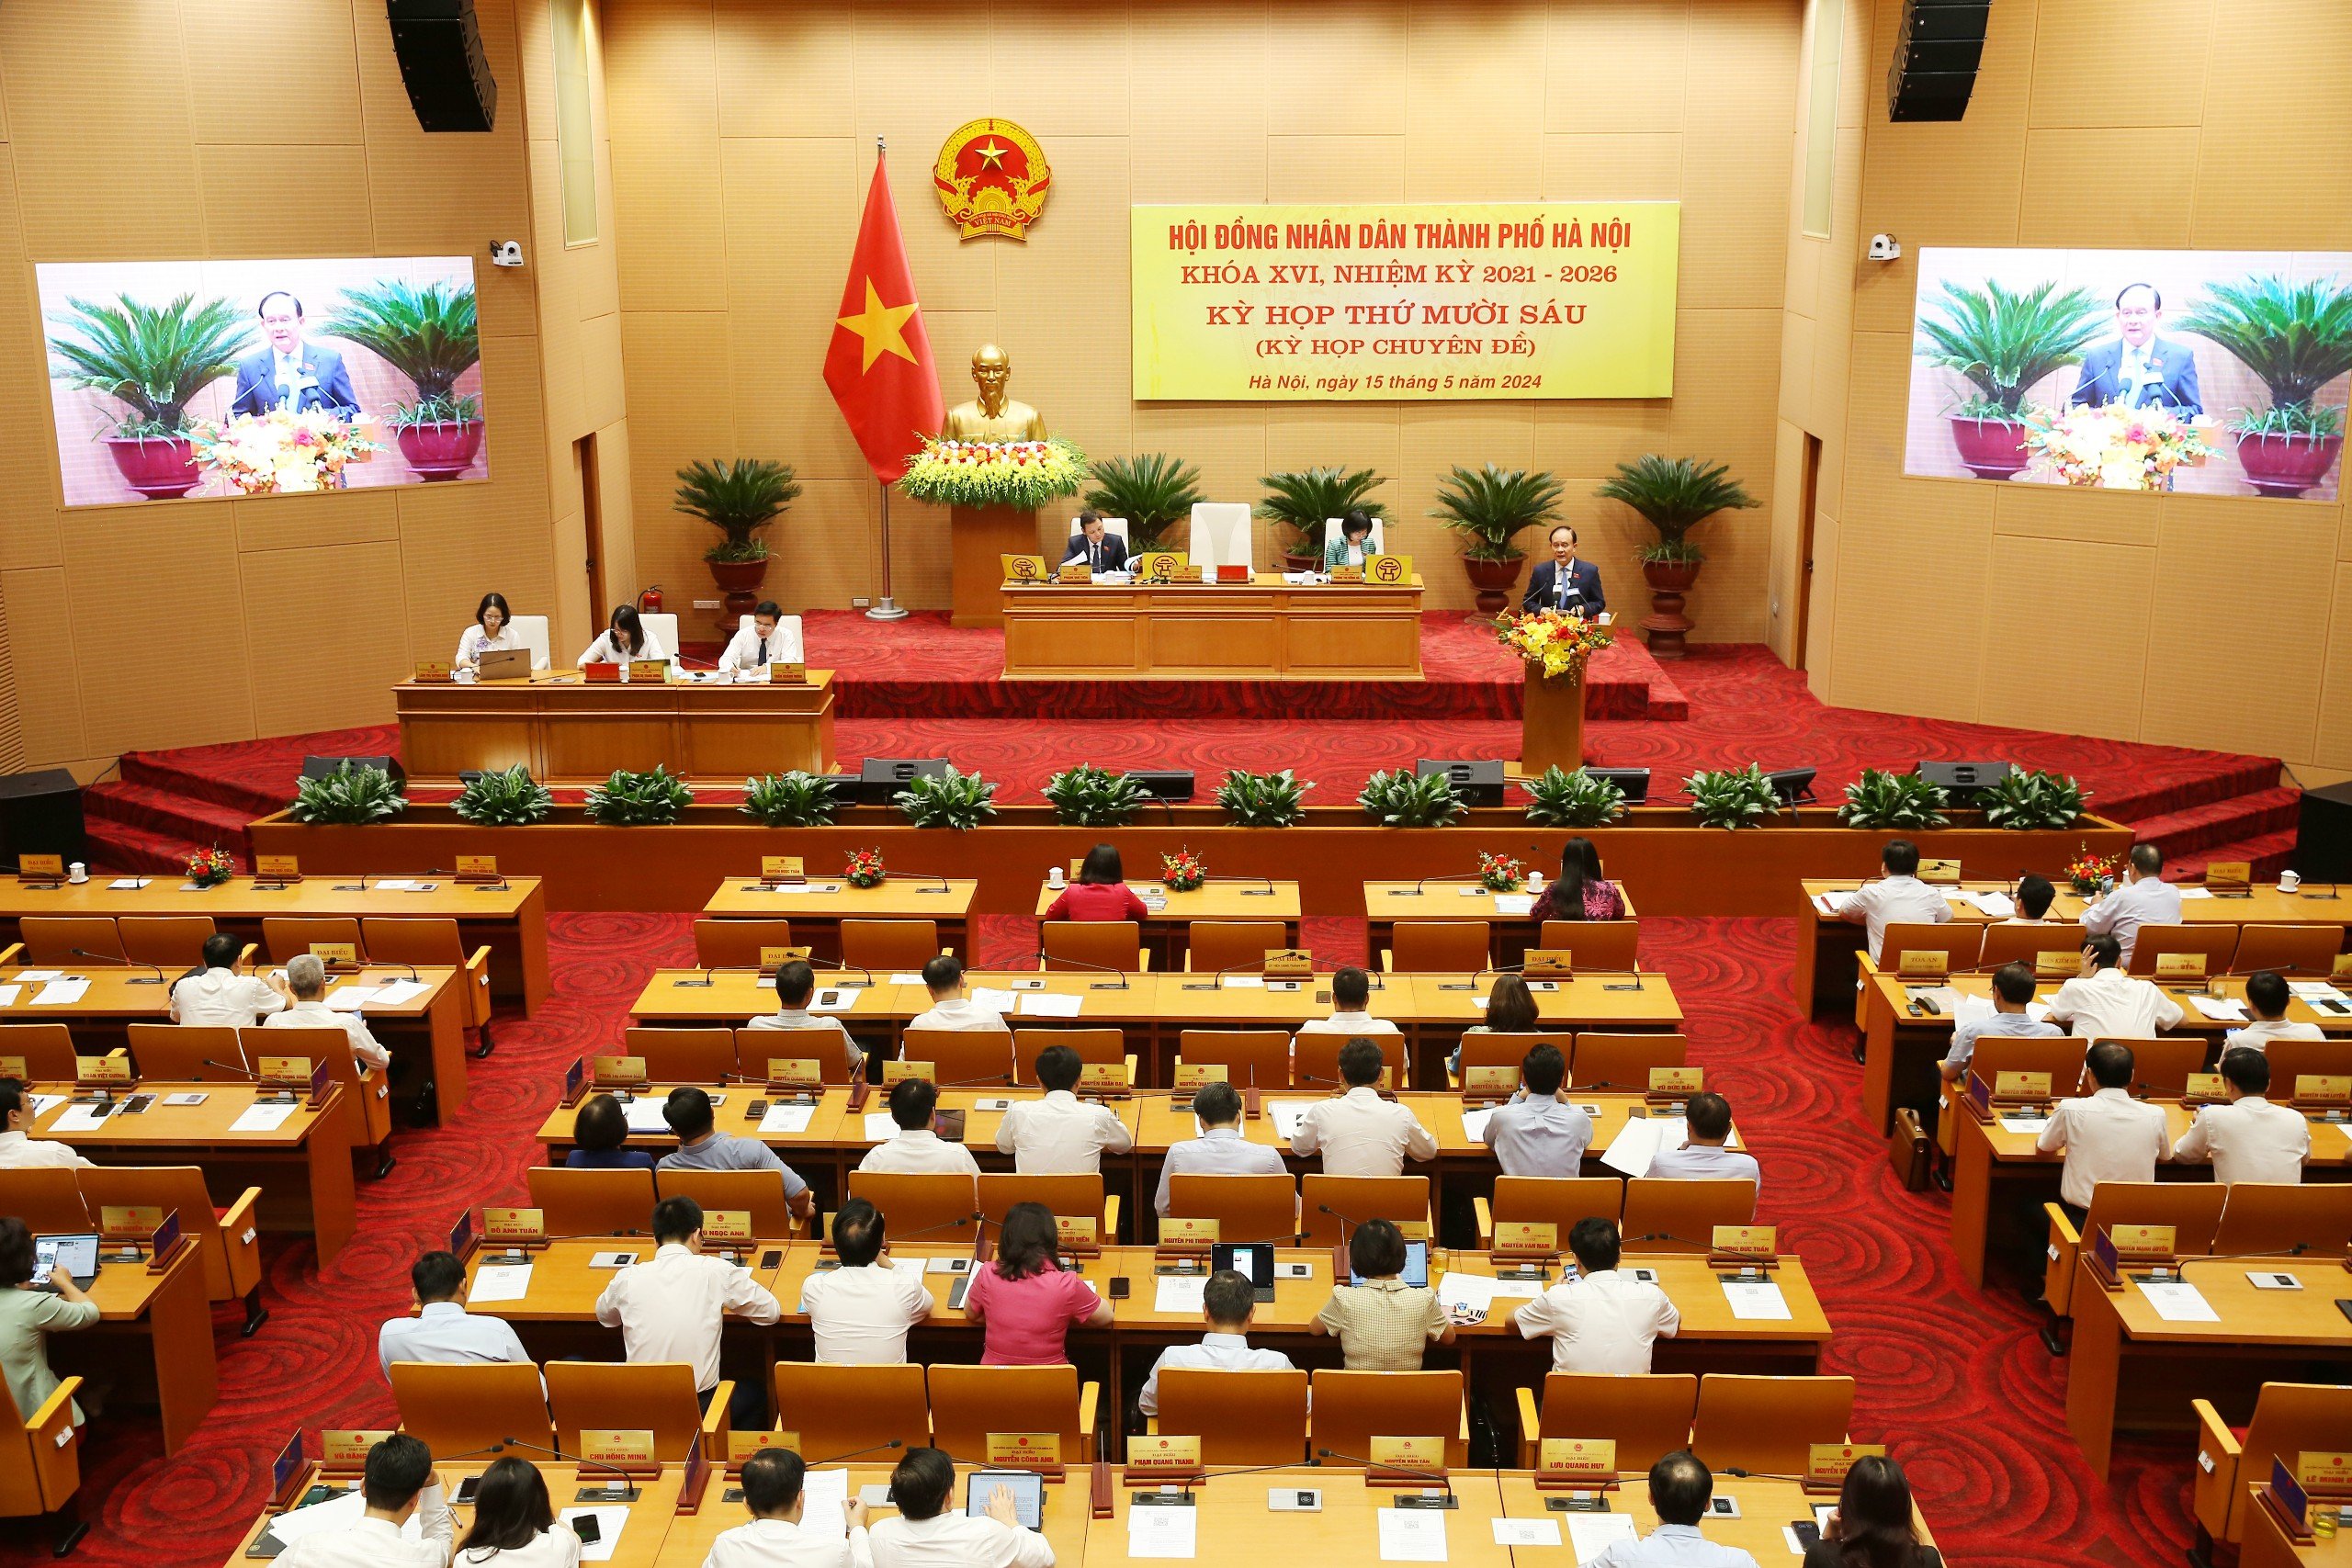 HĐND TP Hà Nội đồng ý không sáp nhập quận Hoàn Kiếm, giảm 61 xã, phường và lập thêm 2 quận mới- Ảnh 1.